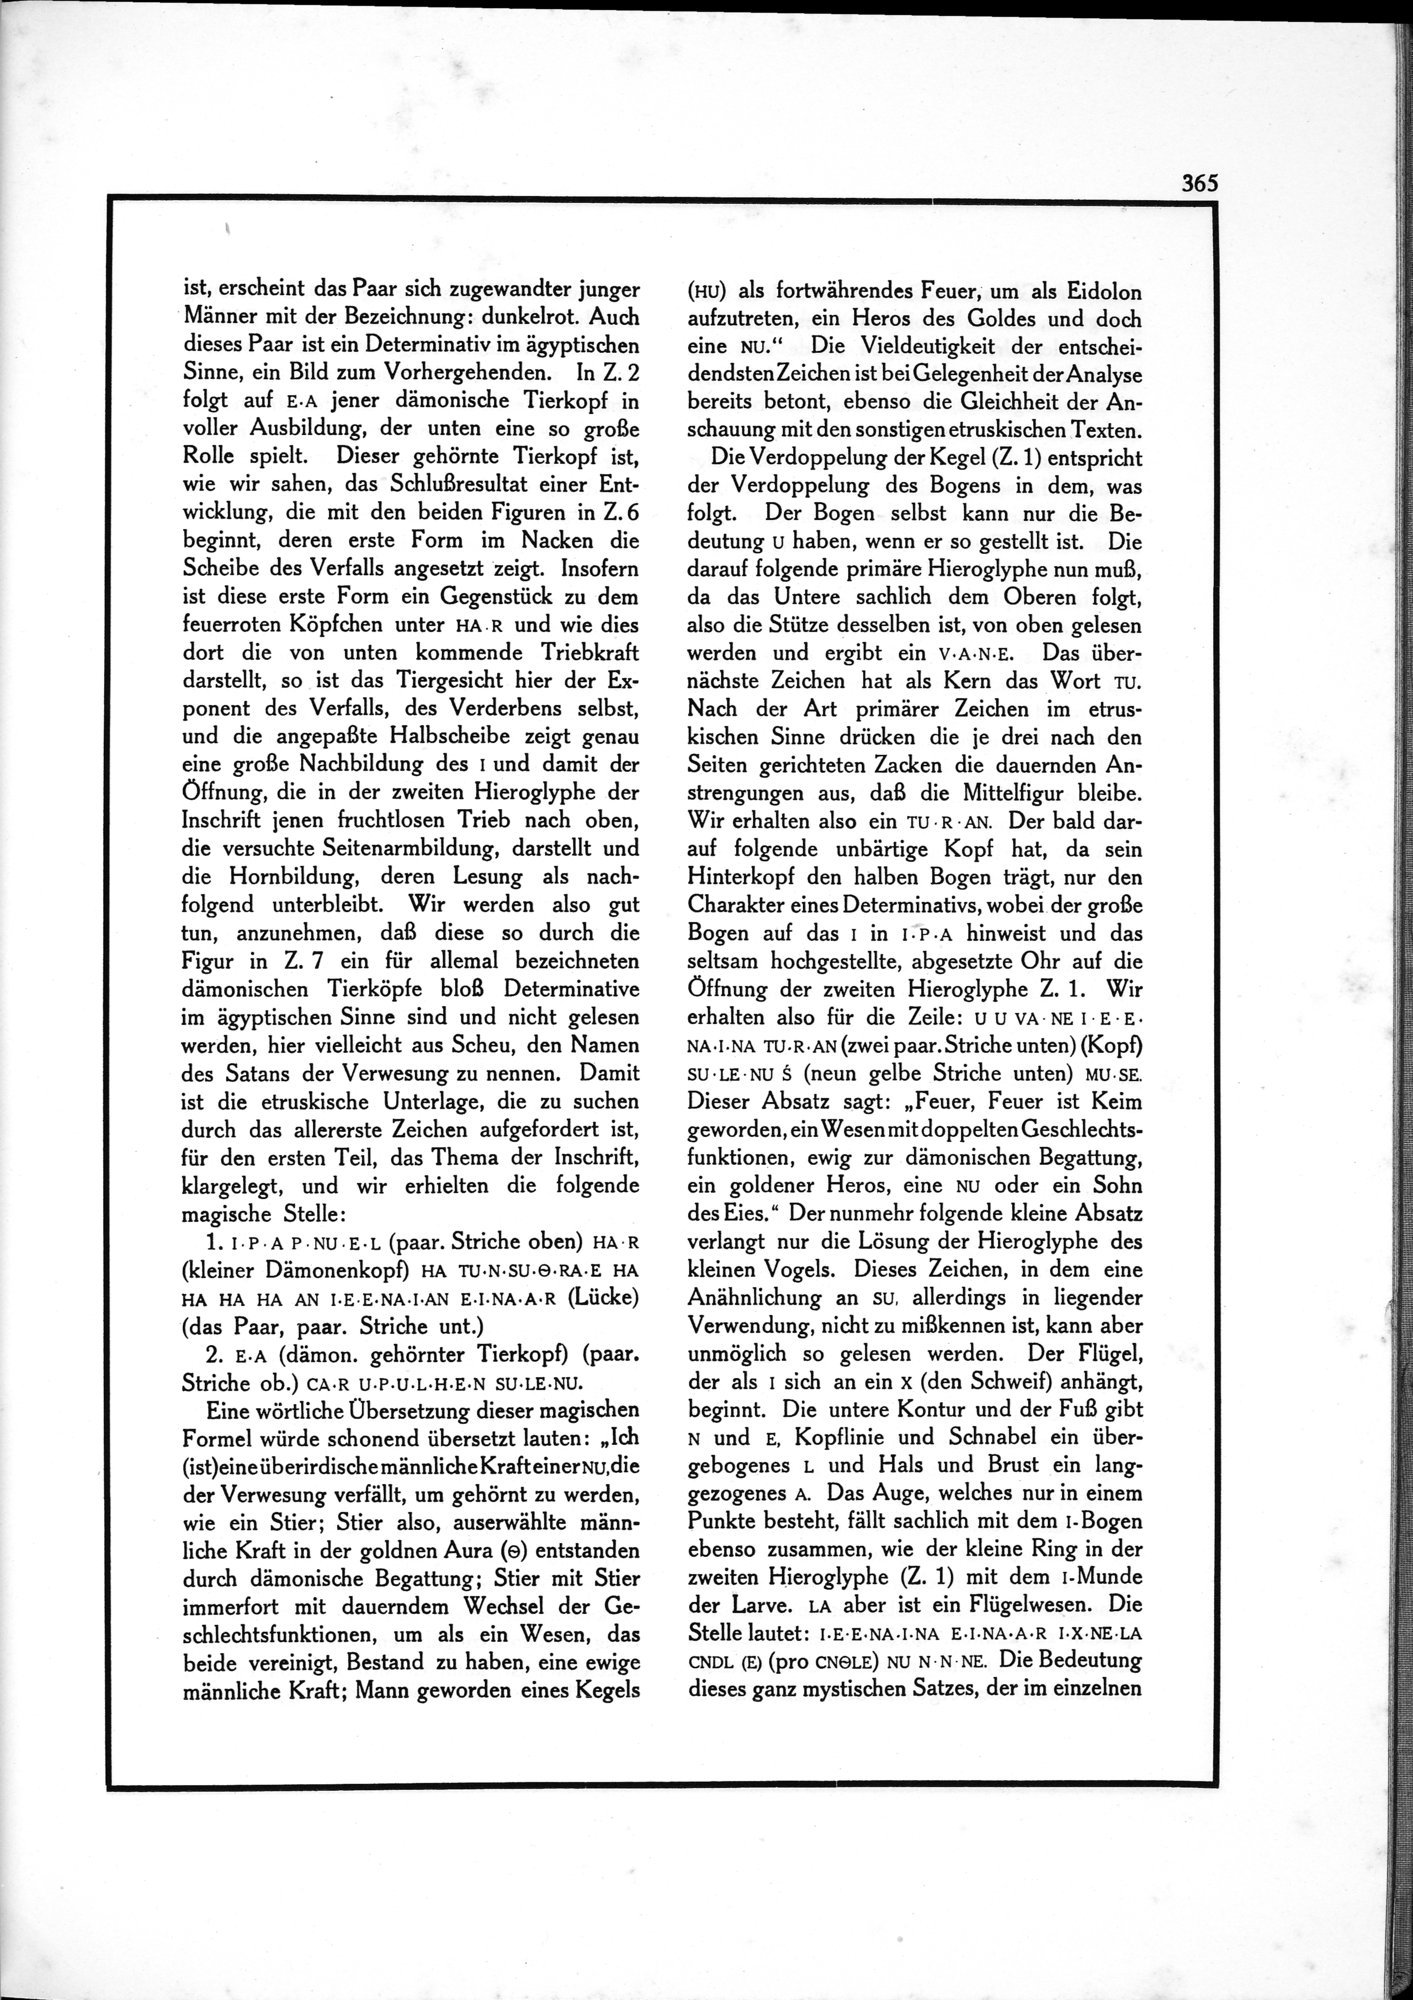 Die Teufel des Avesta und Ihre Beziehungen zur Ikonographie des Buddhismus Zentral-Asiens : vol.1 / Page 369 (Grayscale High Resolution Image)